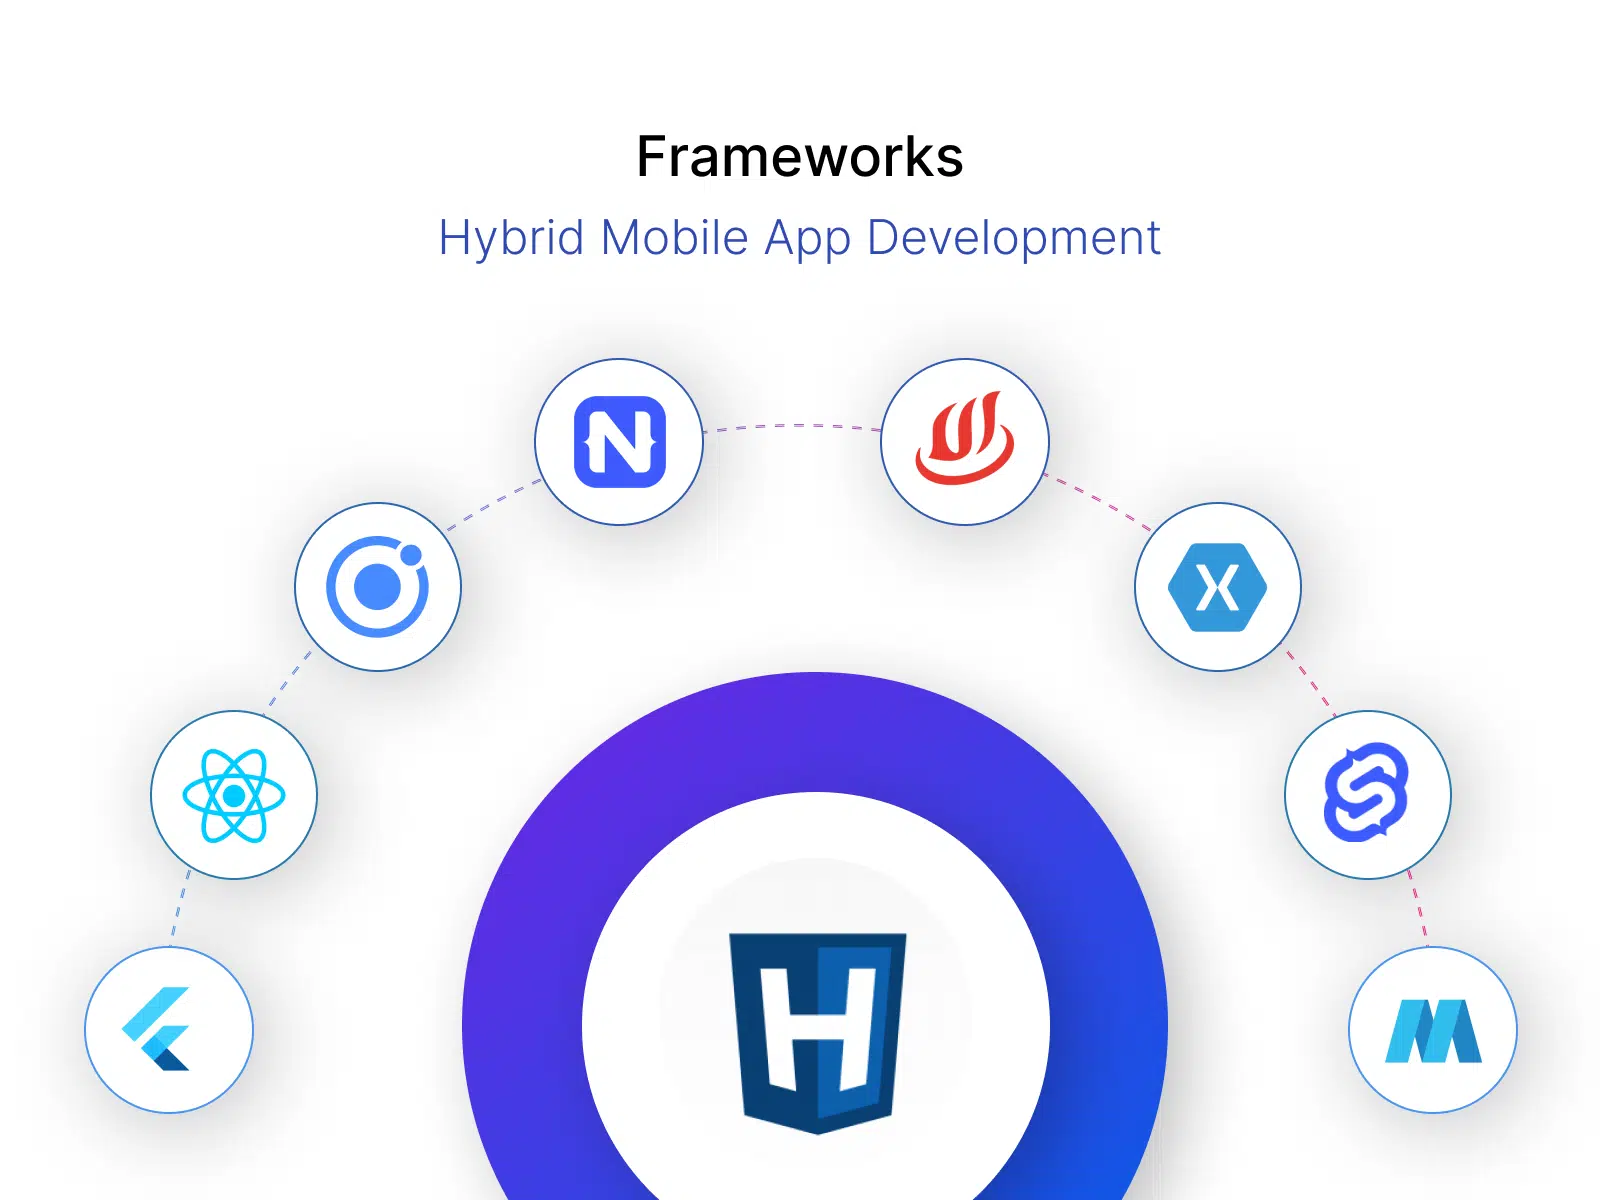 Hybrid apps: Frameworks